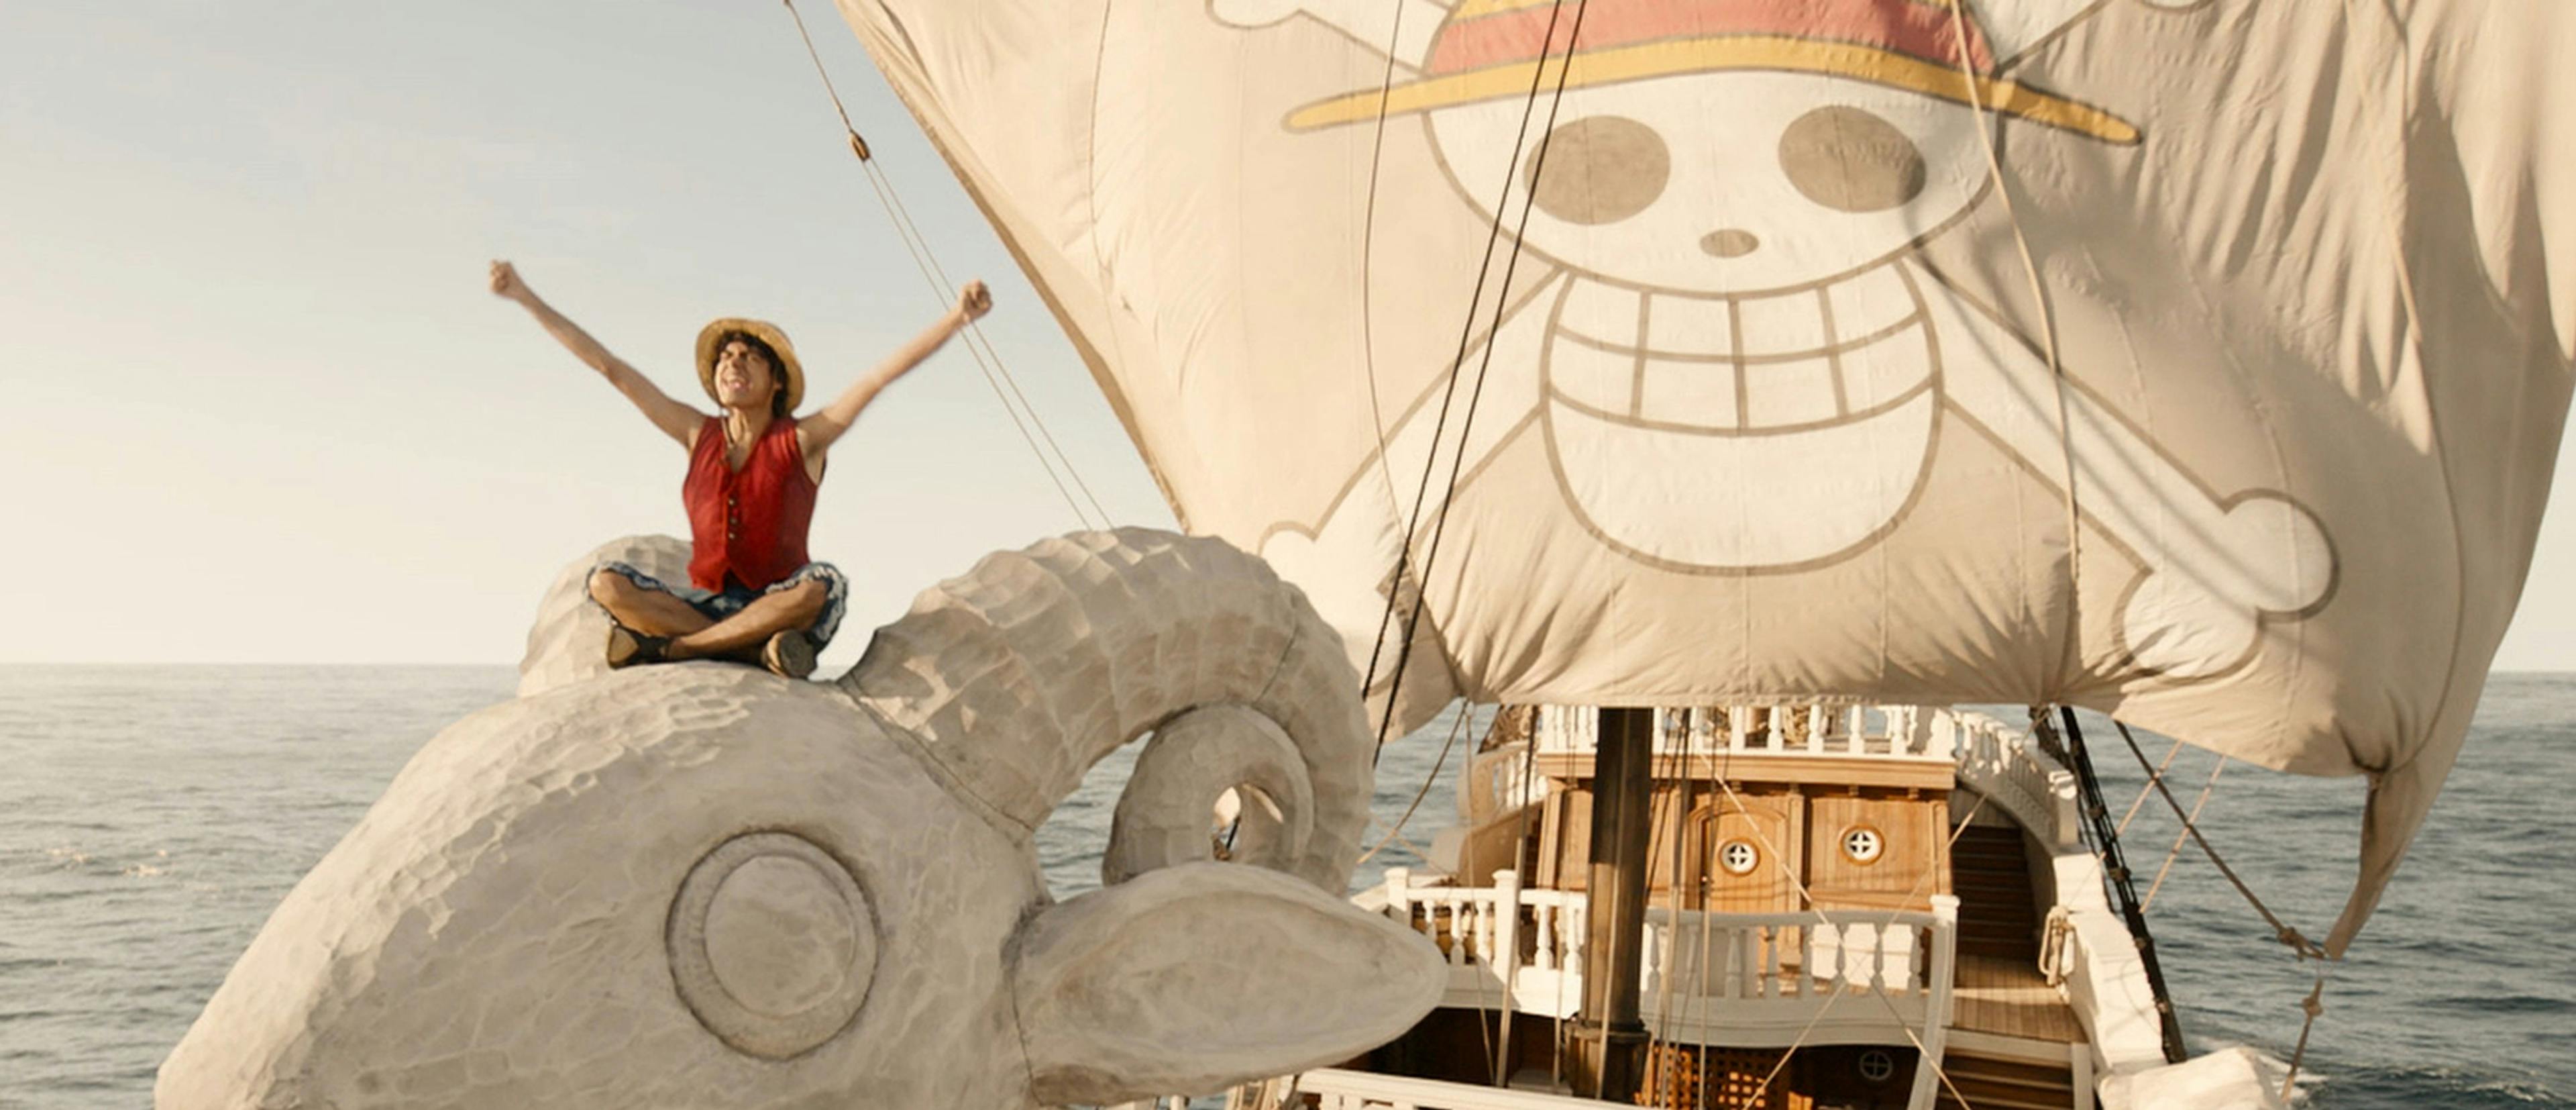 Iñaki Godoy es Monkey D. Luffy en la adaptación de 'One Piece'